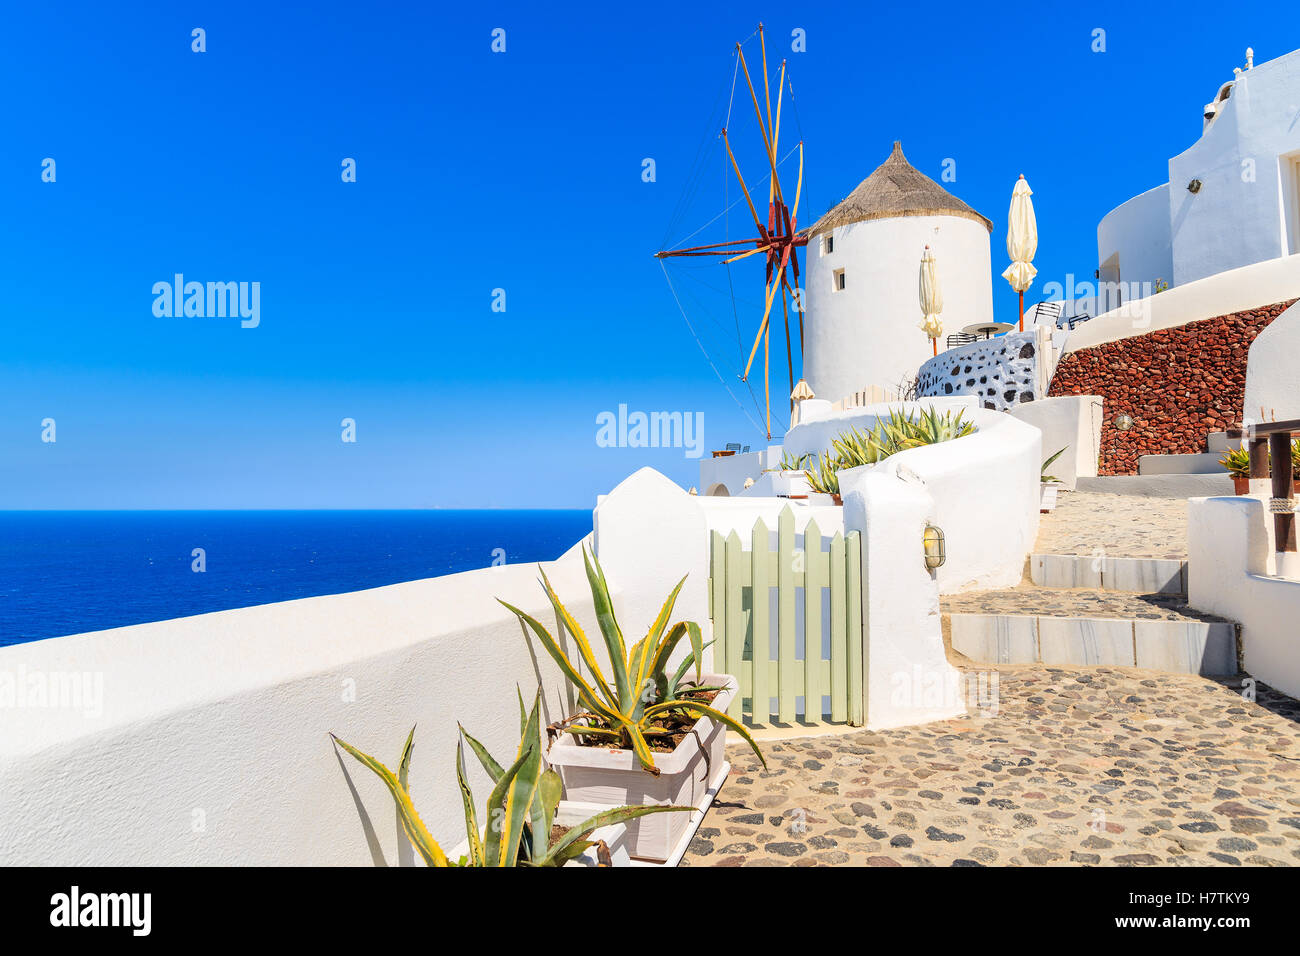 Typischen weißen Windmühle auf Straße von Dorf Oia, Santorin, Griechenland Stockfoto